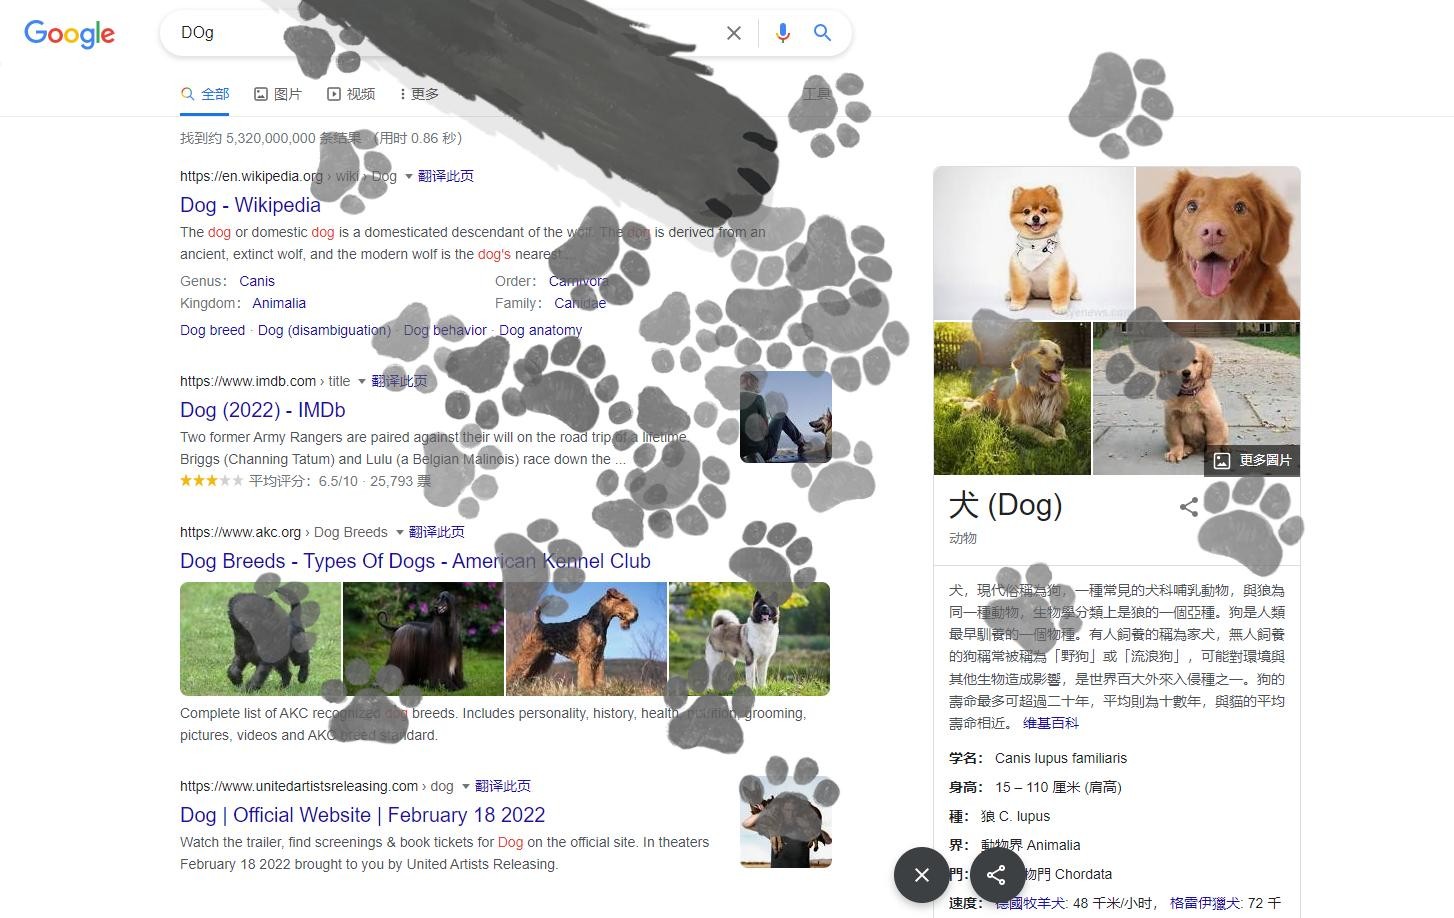 迎接国际猫咪日 谷歌上线猫咪爪印彩蛋小游戏